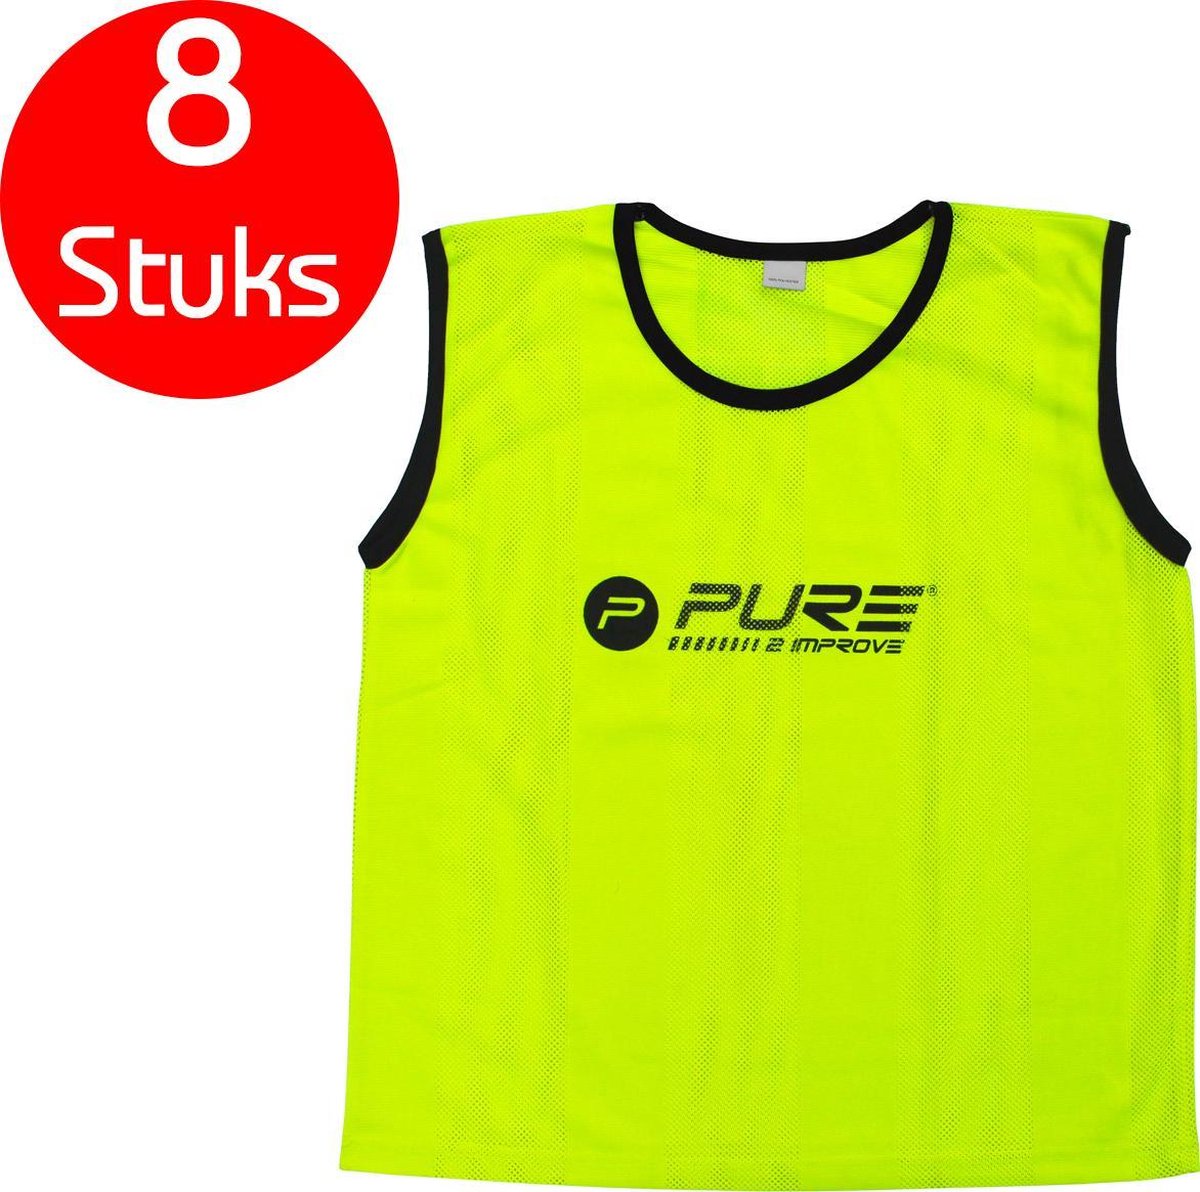 Pure2Improve - 8 stuks - voetbal hesjes - geel - maat mini's - trainings hesjes - voetbal hesje - trainingshesjes